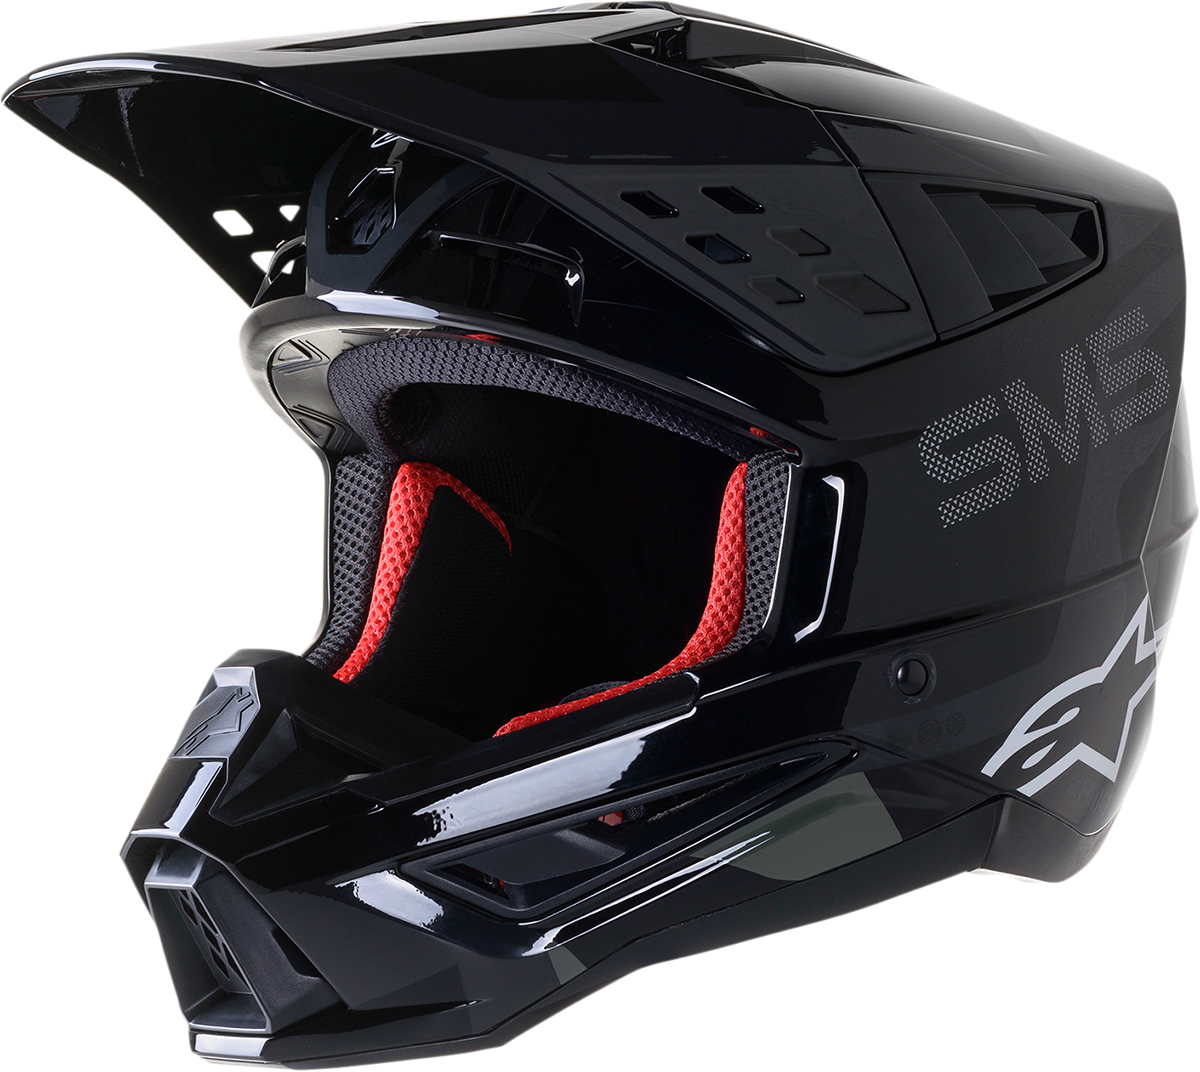 SM5 Helmet - Rover - Black/Anthracite/Camo - 2XL